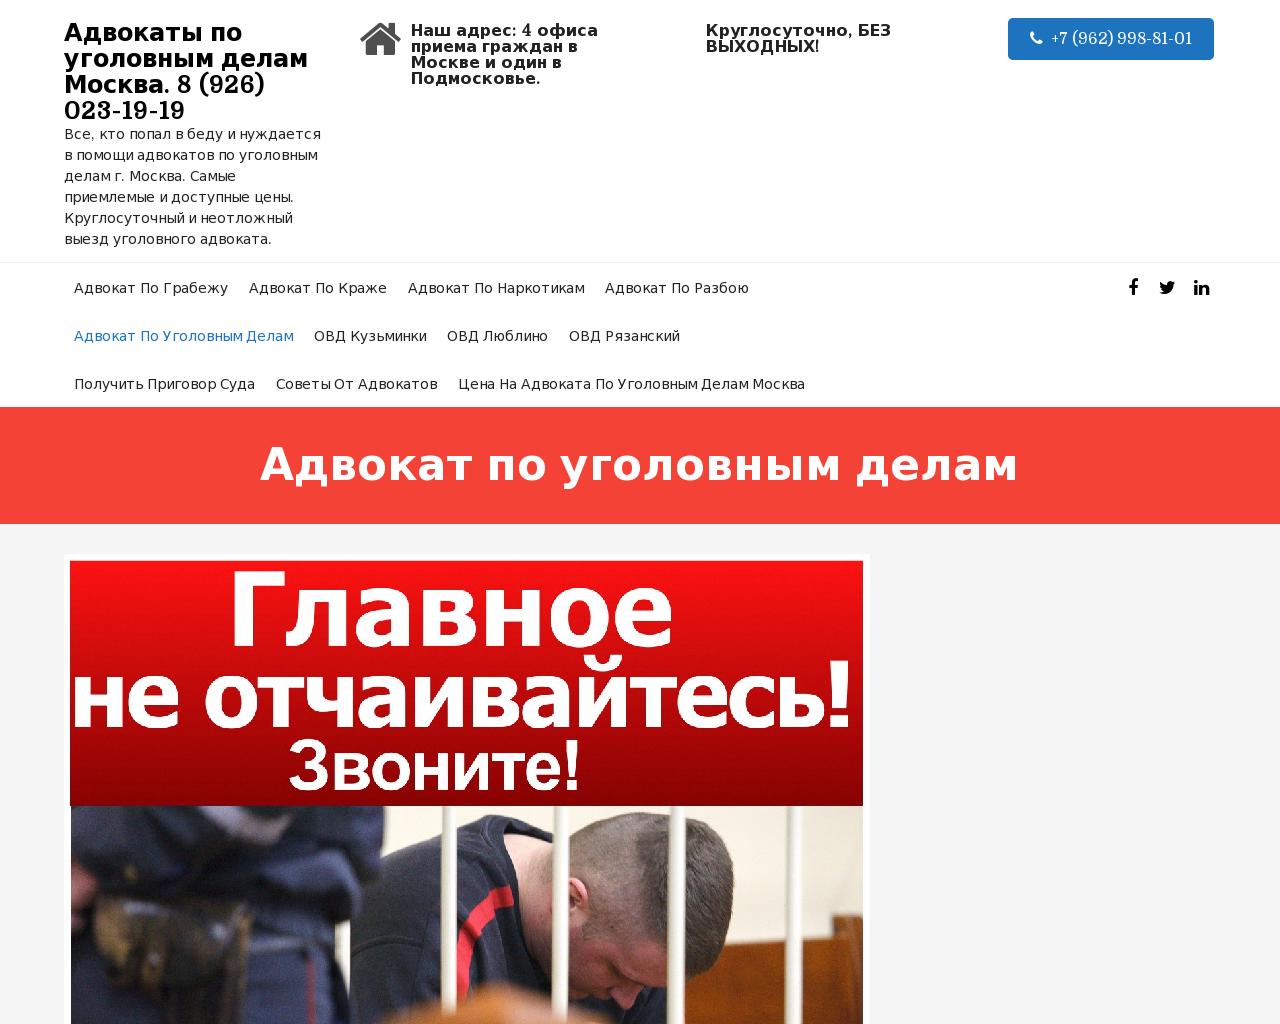 Изображение сайта advokat-po-ugolovnomu-delu.ru в разрешении 1280x1024